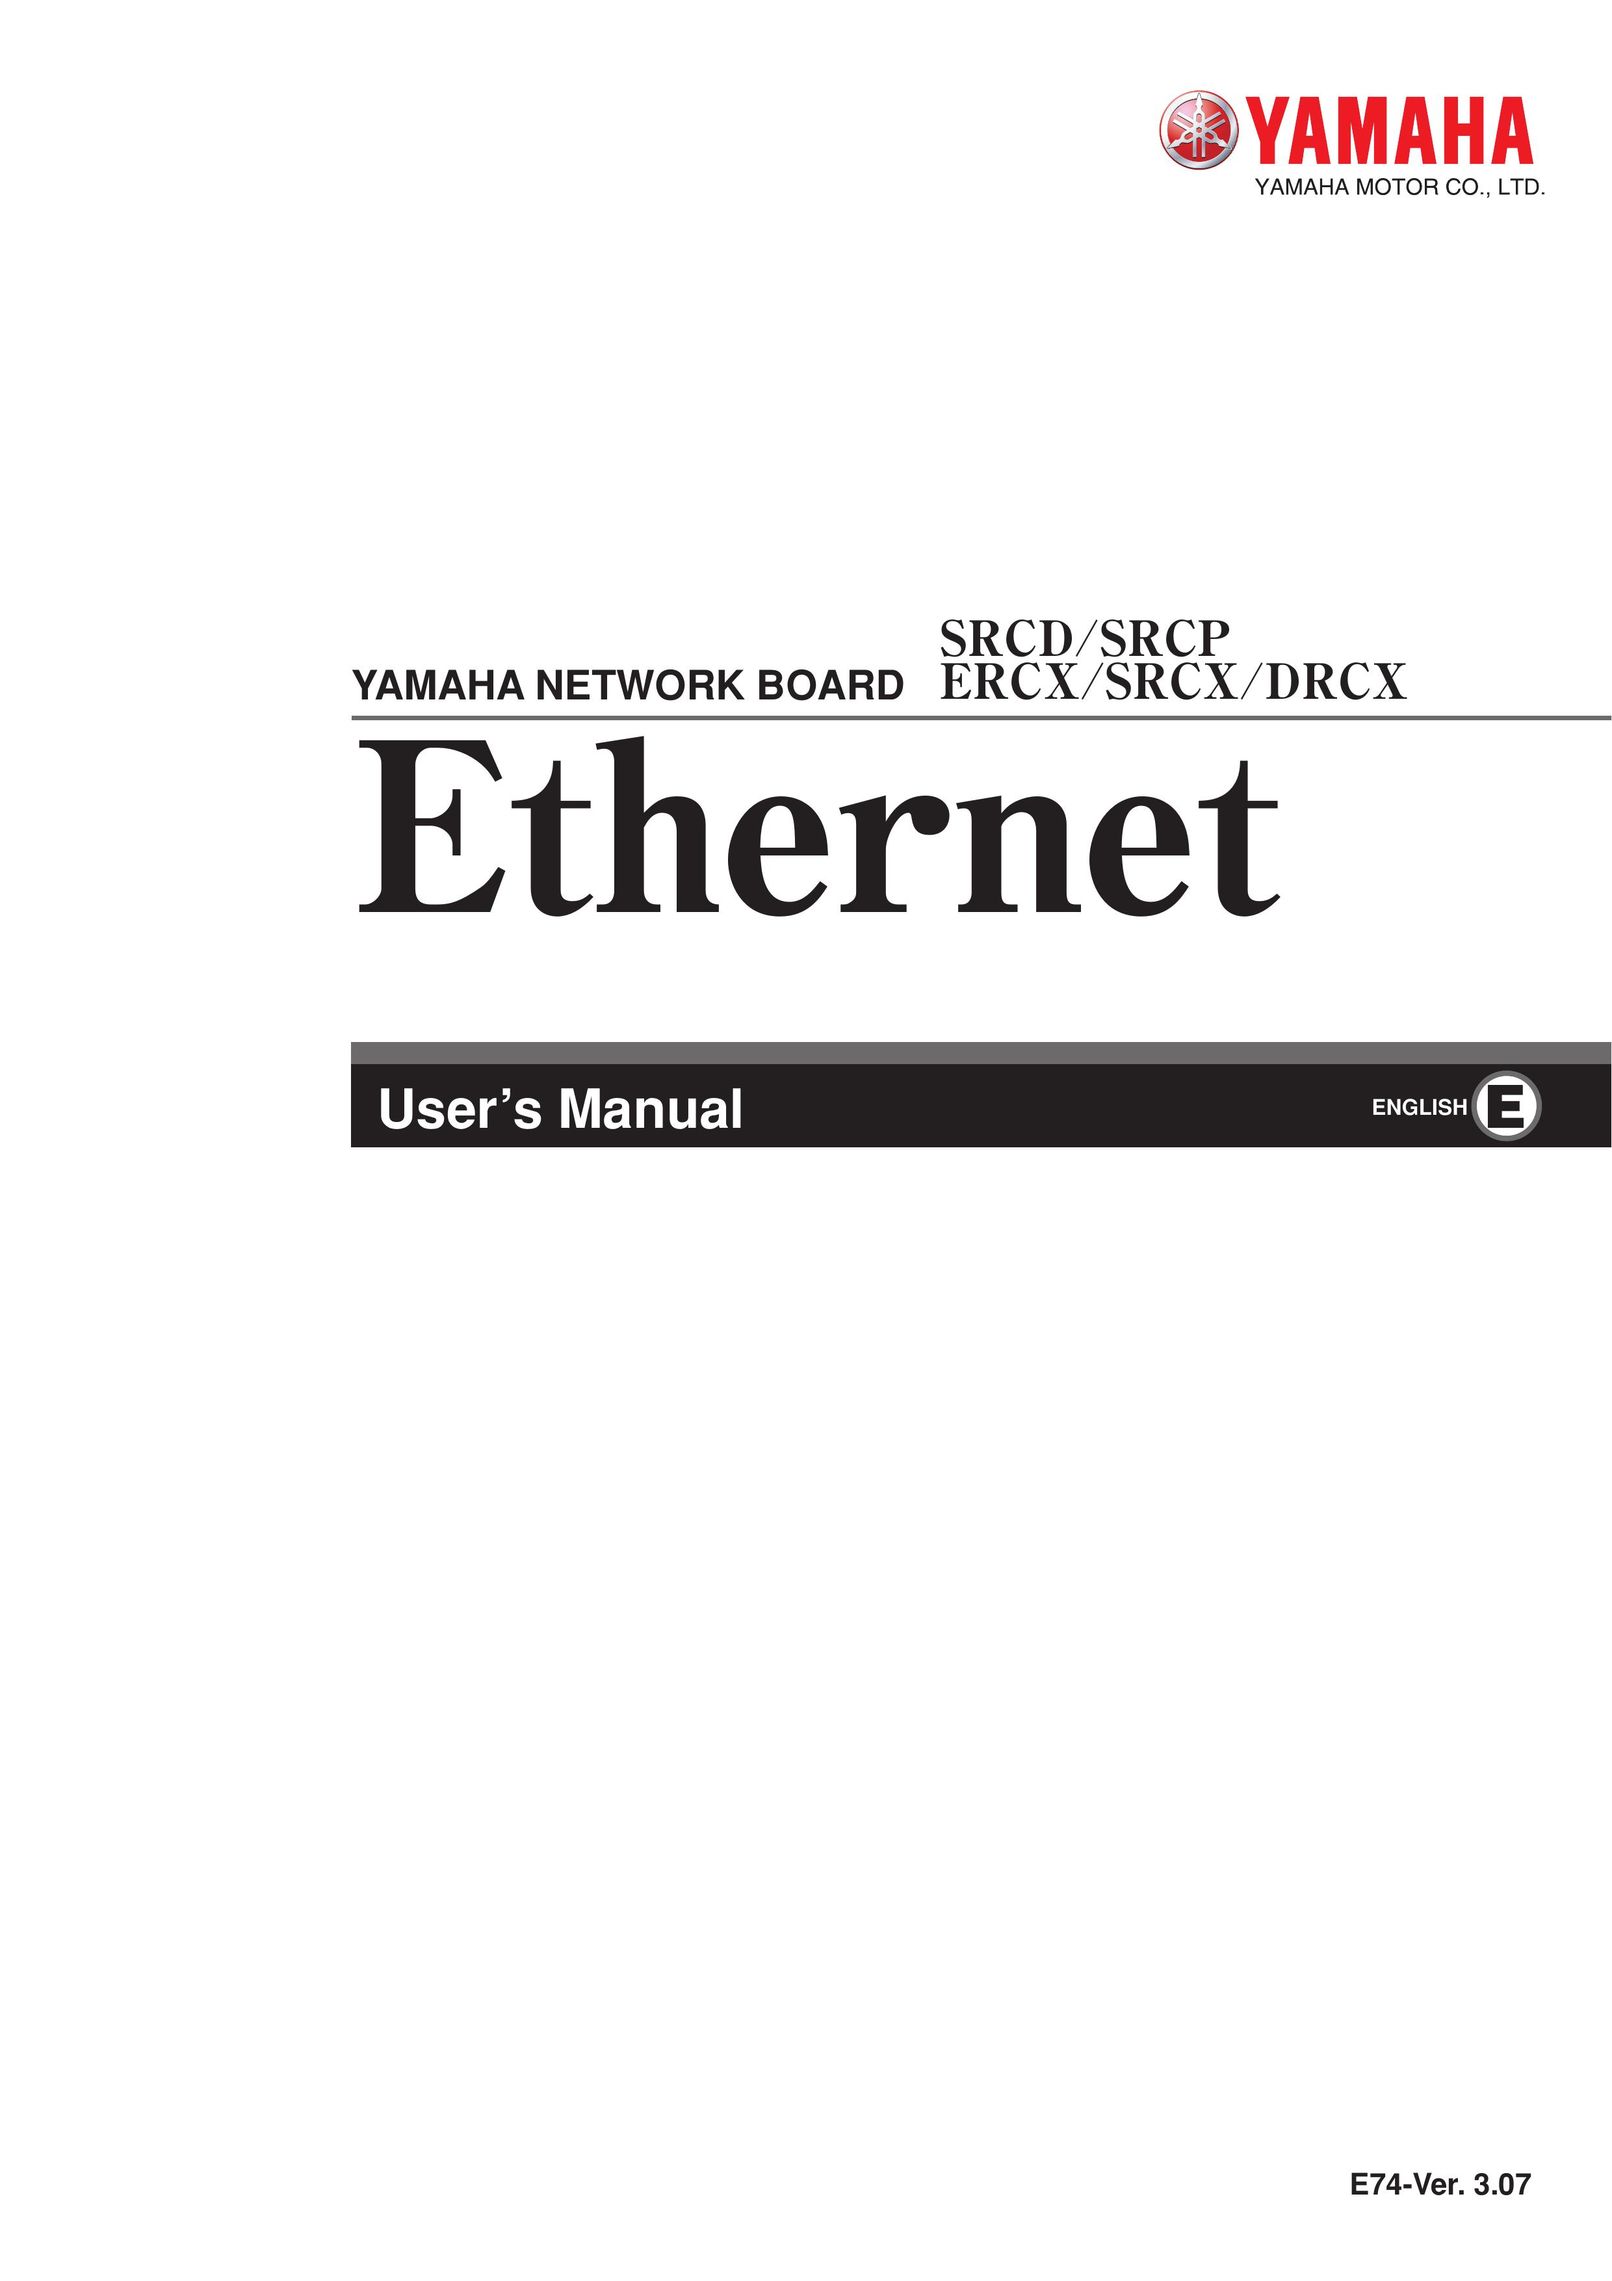 Yamaha ERCX Computer Hardware User Manual